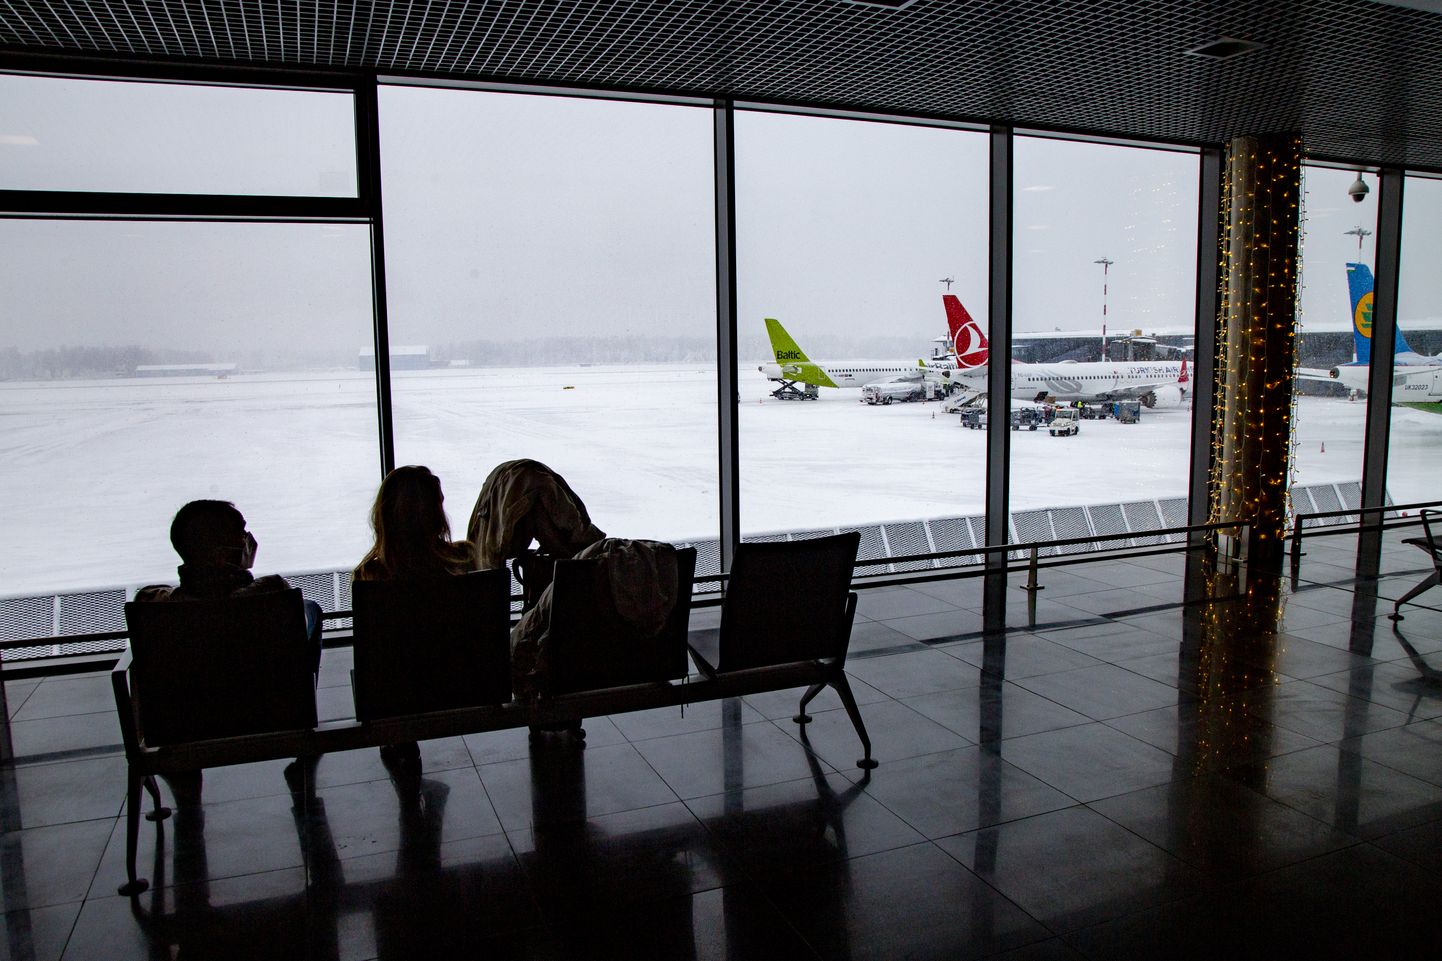 Starptautiskās lidostas "Rīga" izlidošanas terminālis.